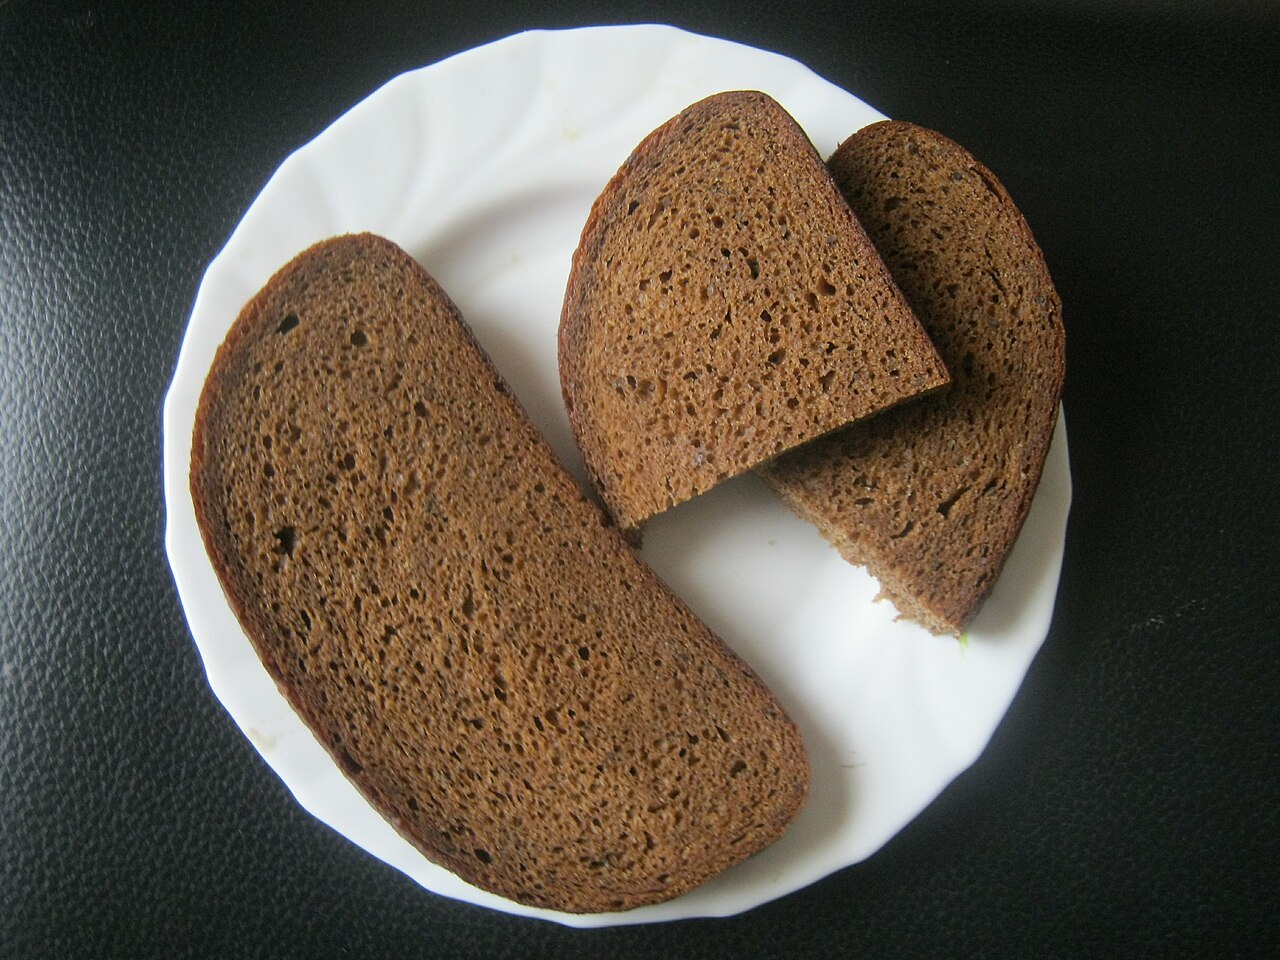 Диетолог предупреждает об опасности добавок, которые нелегально применяются в производстве хлеба